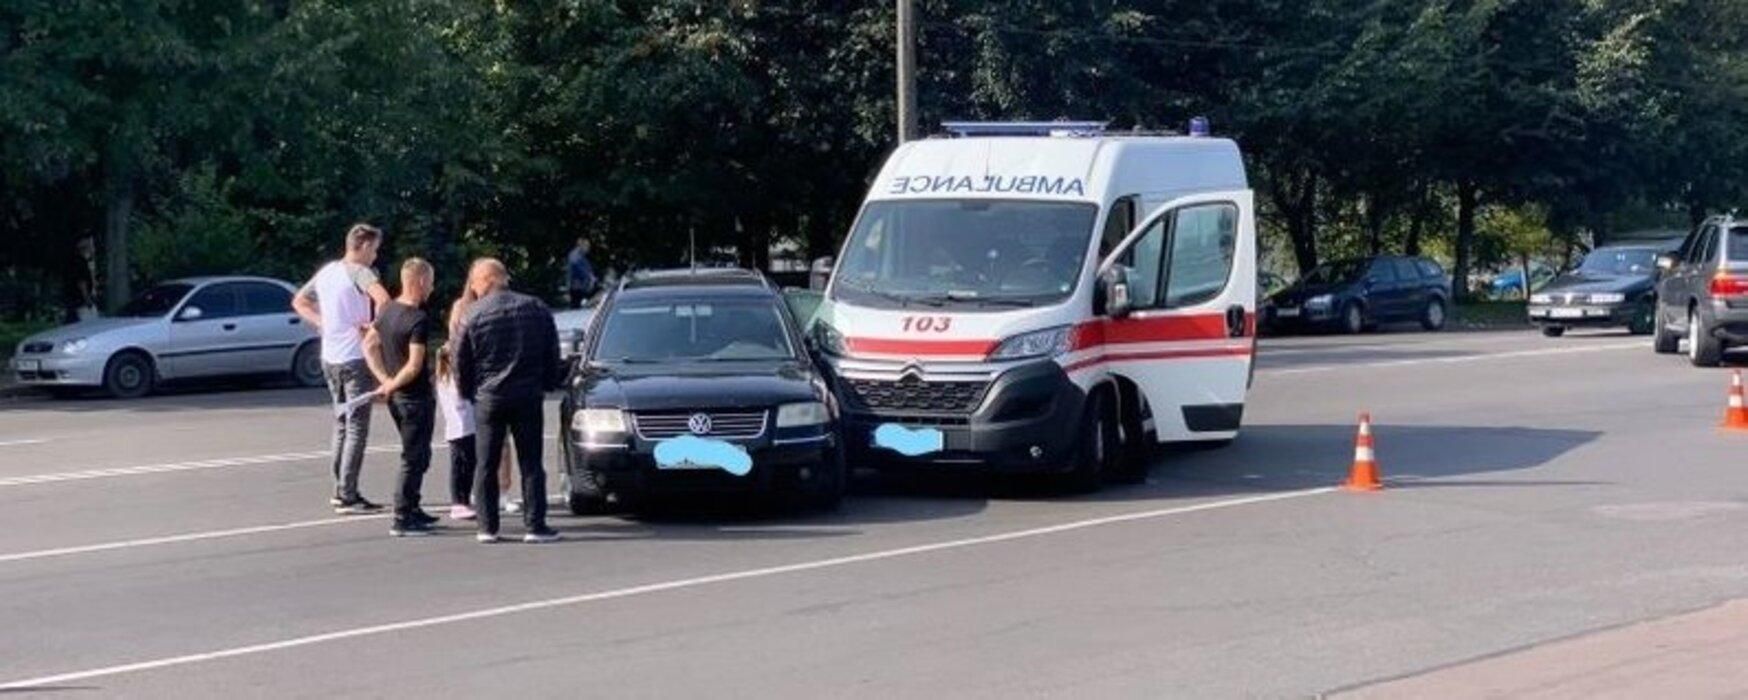 У Житомирі зіштовхнулися швидка та легковик: загинула людина, яку везли до лікарні - Новини Житомира - 24 Канал